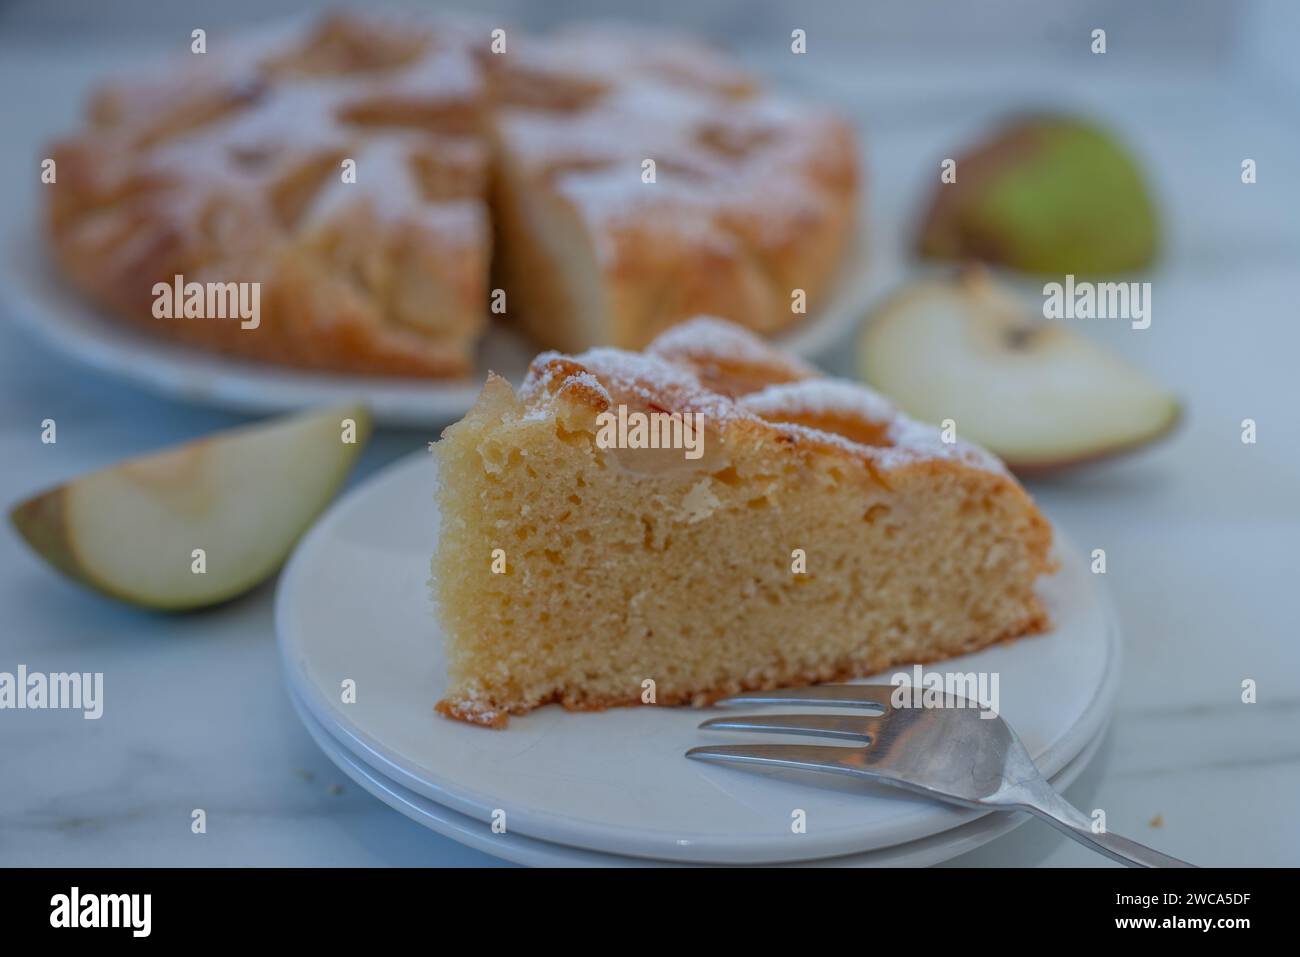 dolce torta di pera alla vaniglia fatta in casa Foto Stock